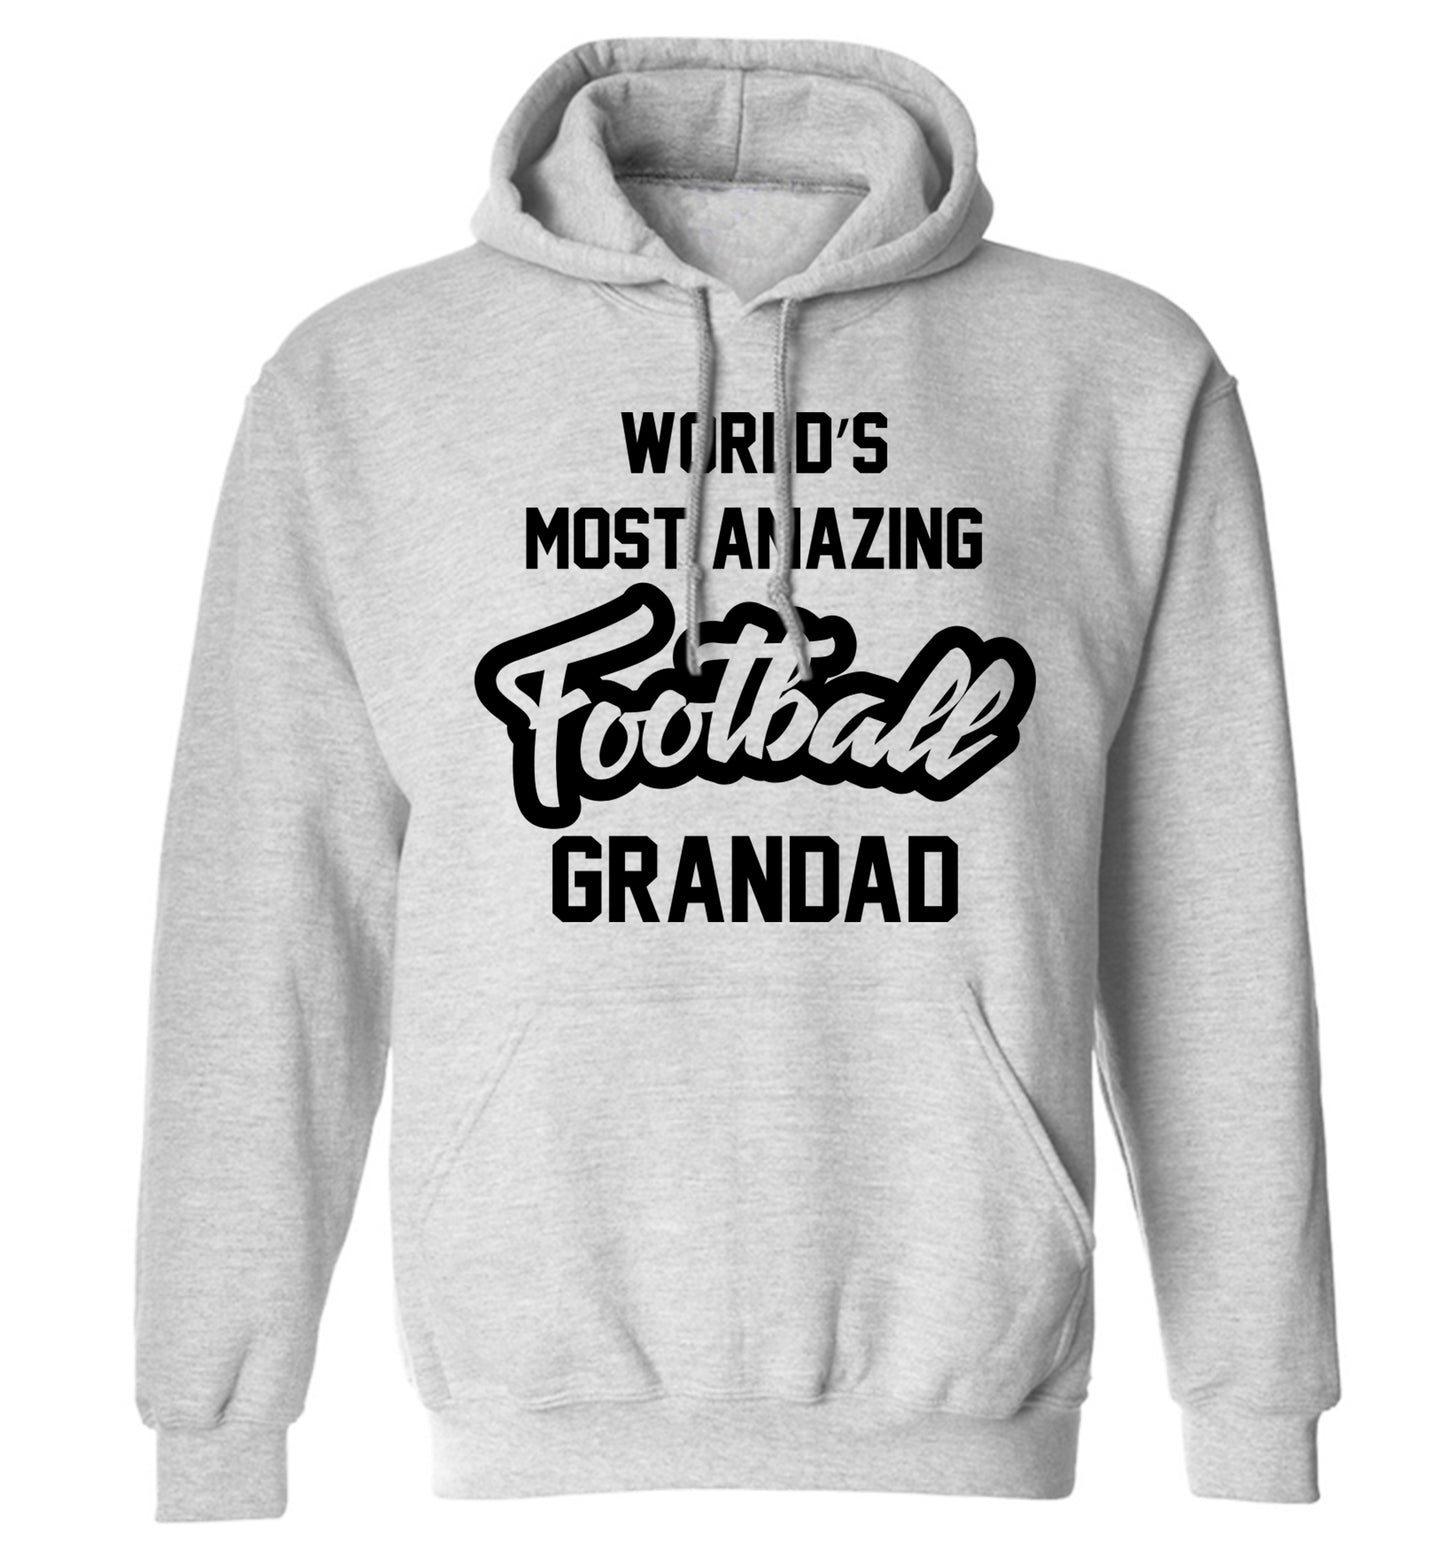 Worlds most amazing football grandad adults unisexgrey hoodie 2XL